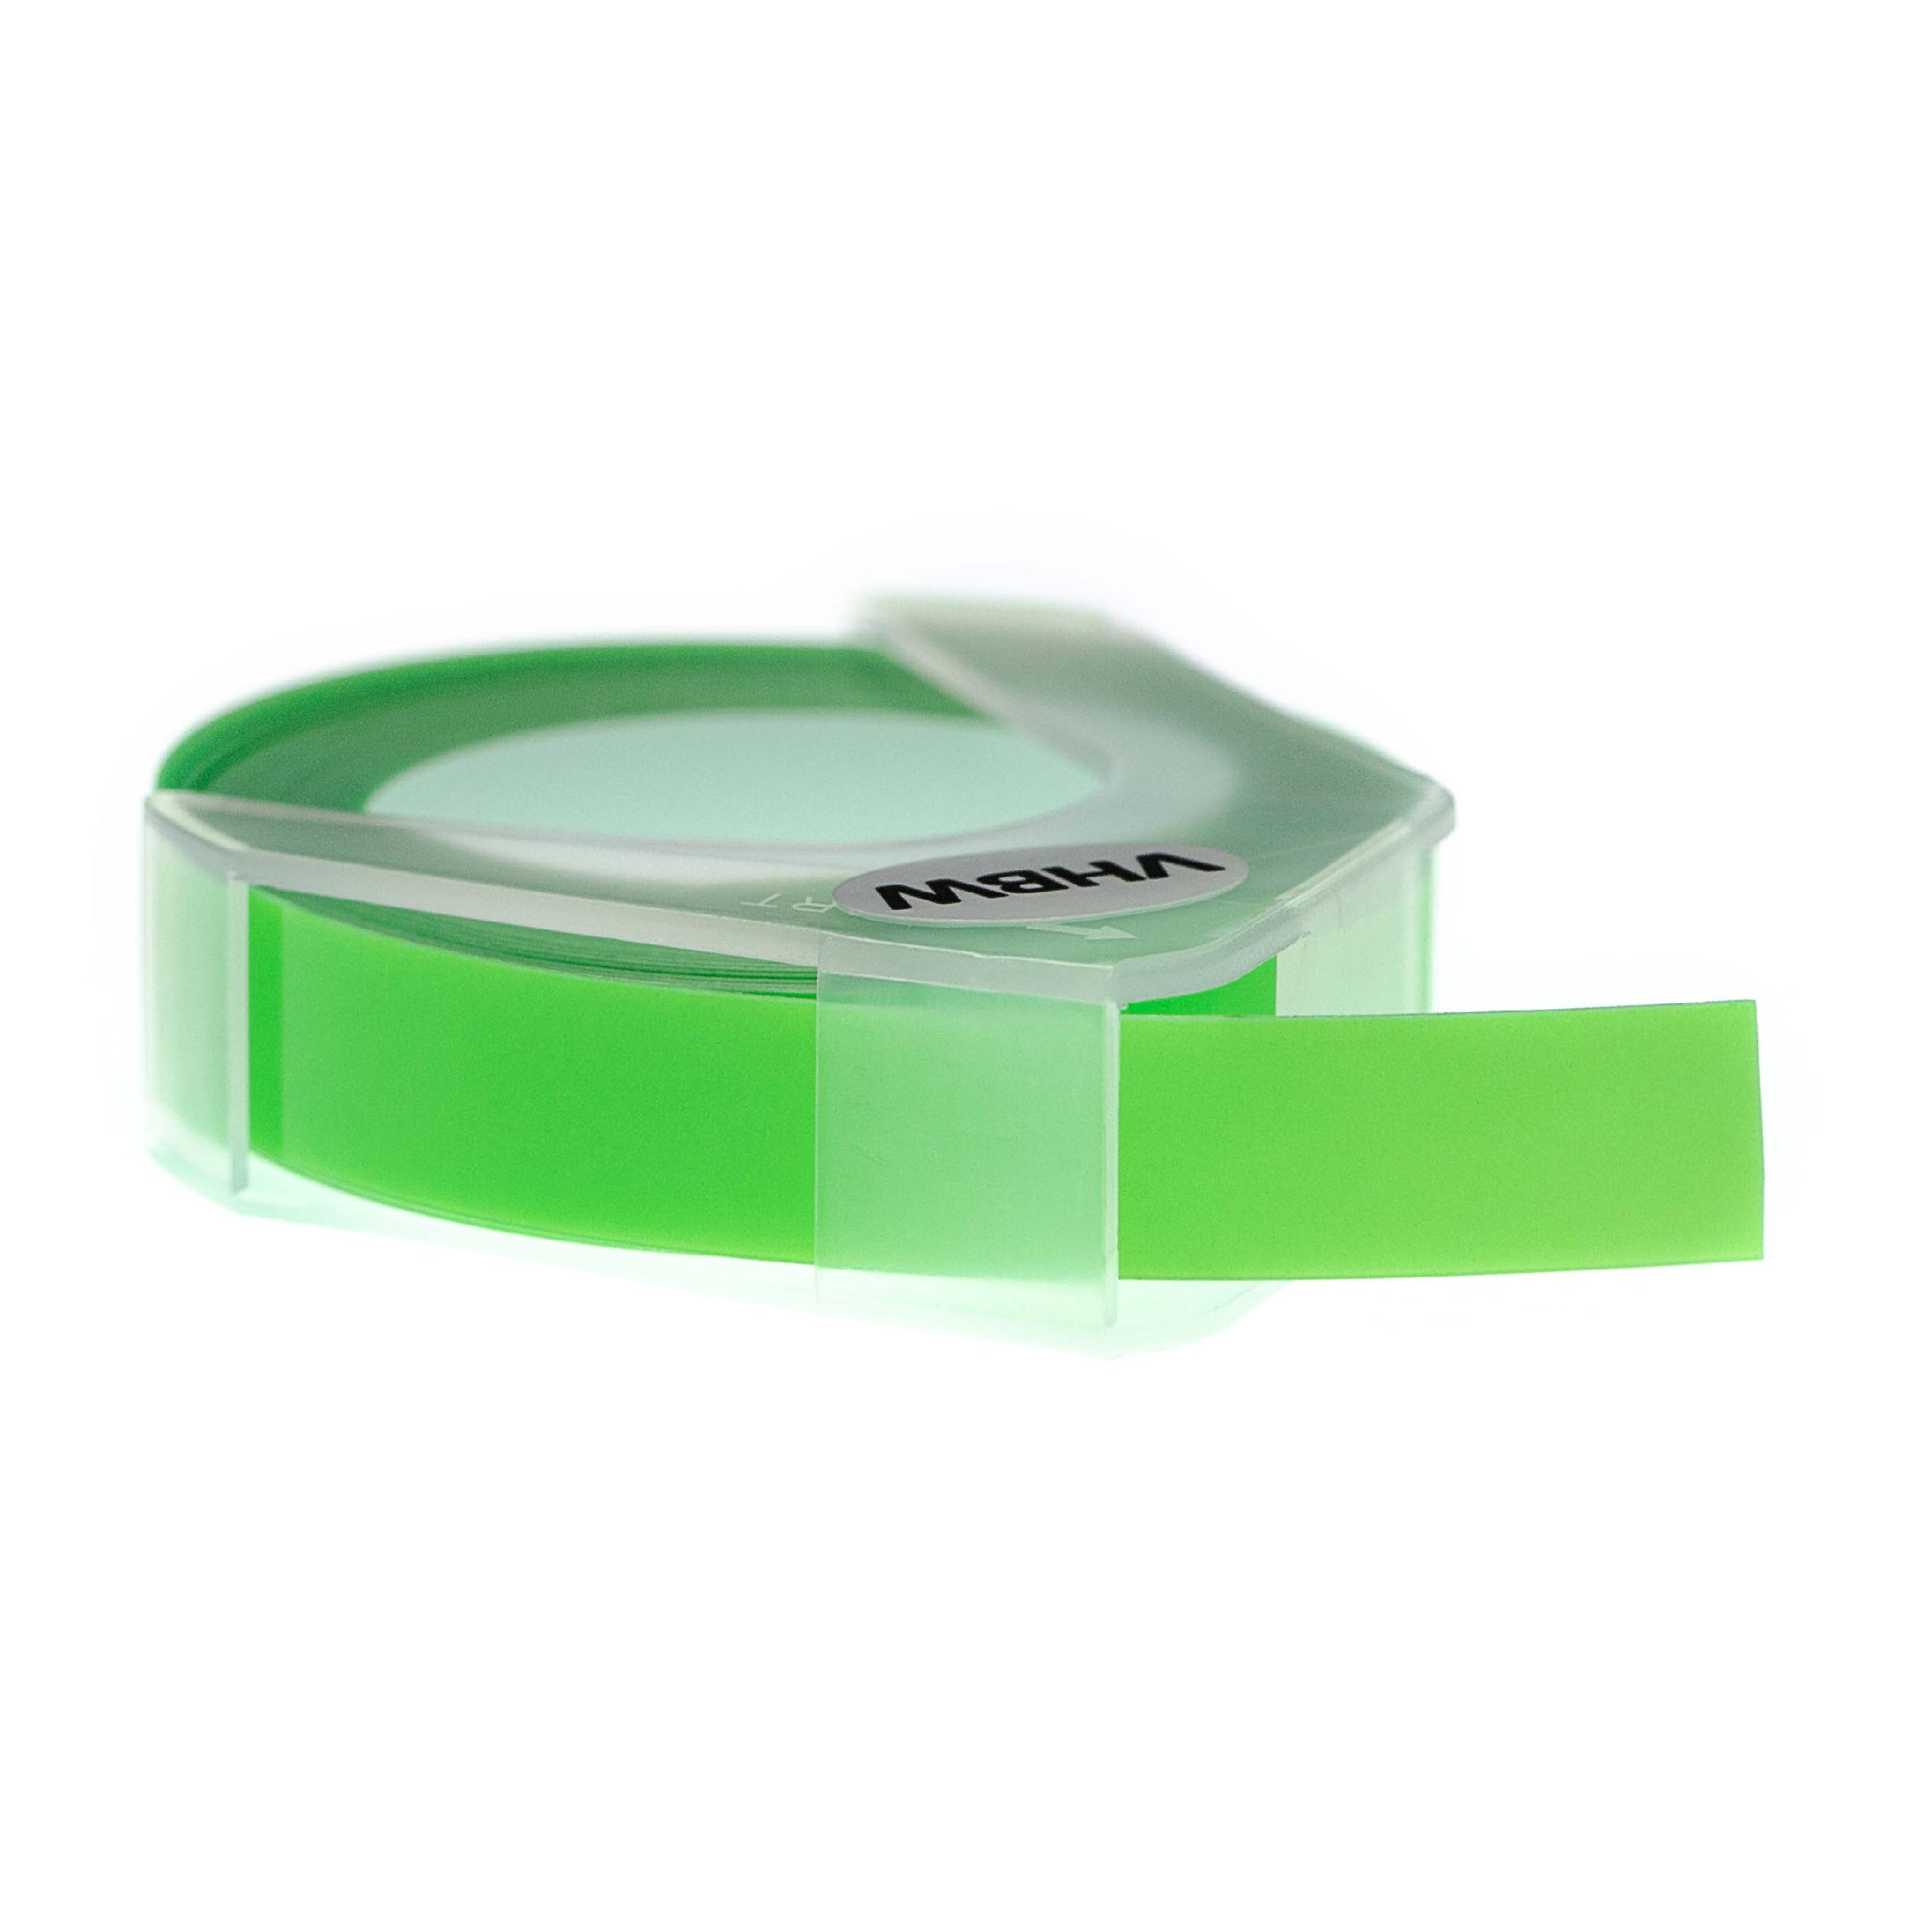 Casete cinta relieve 3D Casete cinta escritura reemplaza Dymo S0898290, 0898290 Blanco su Verde neon